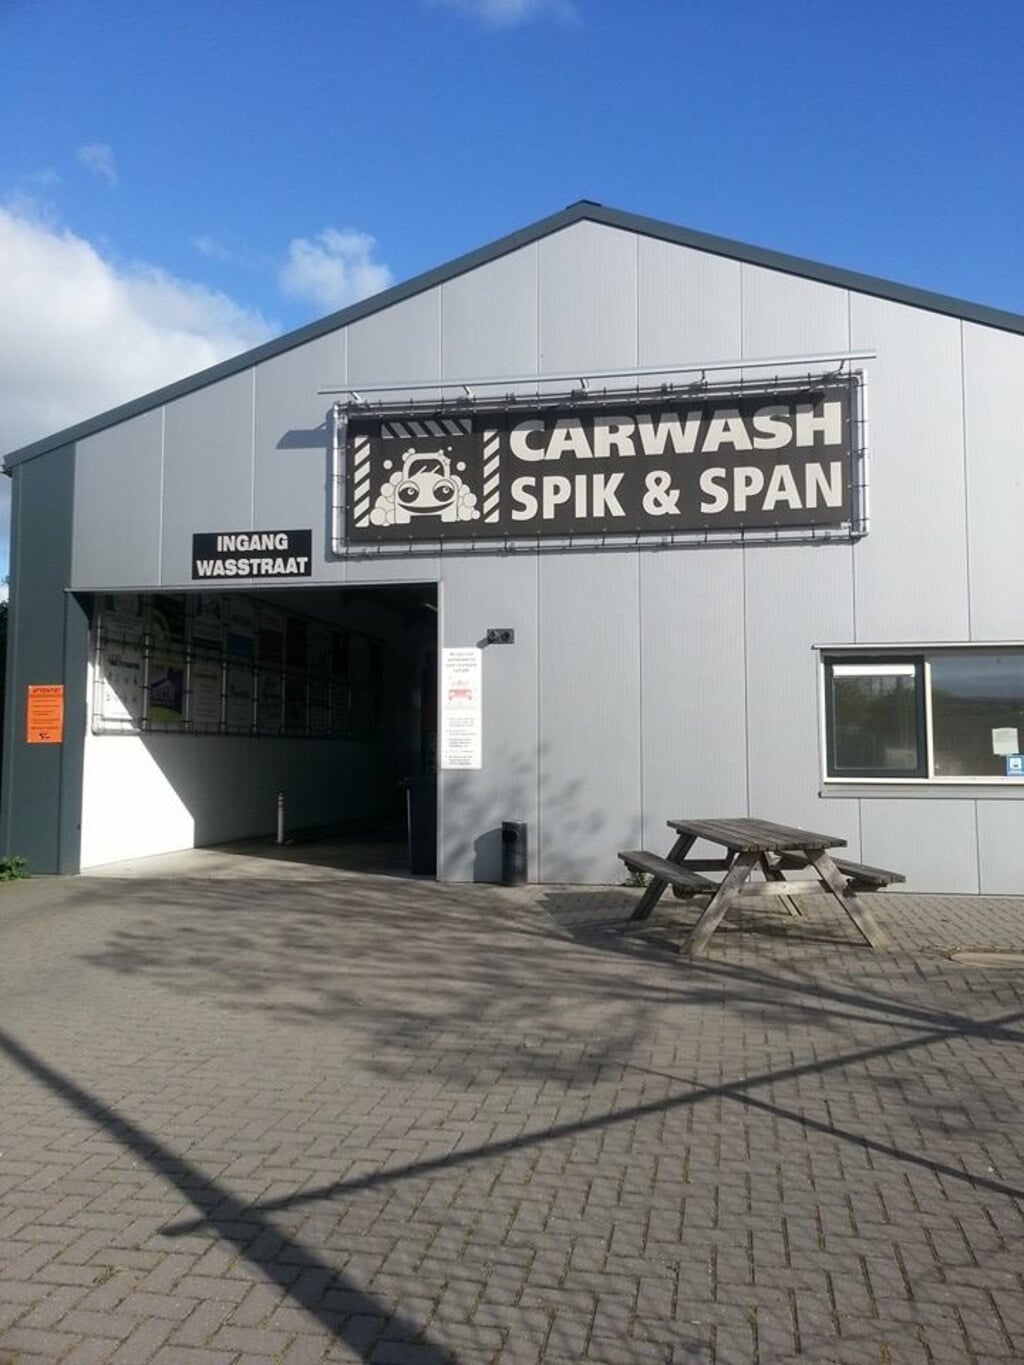 Carwash Spik & Span.